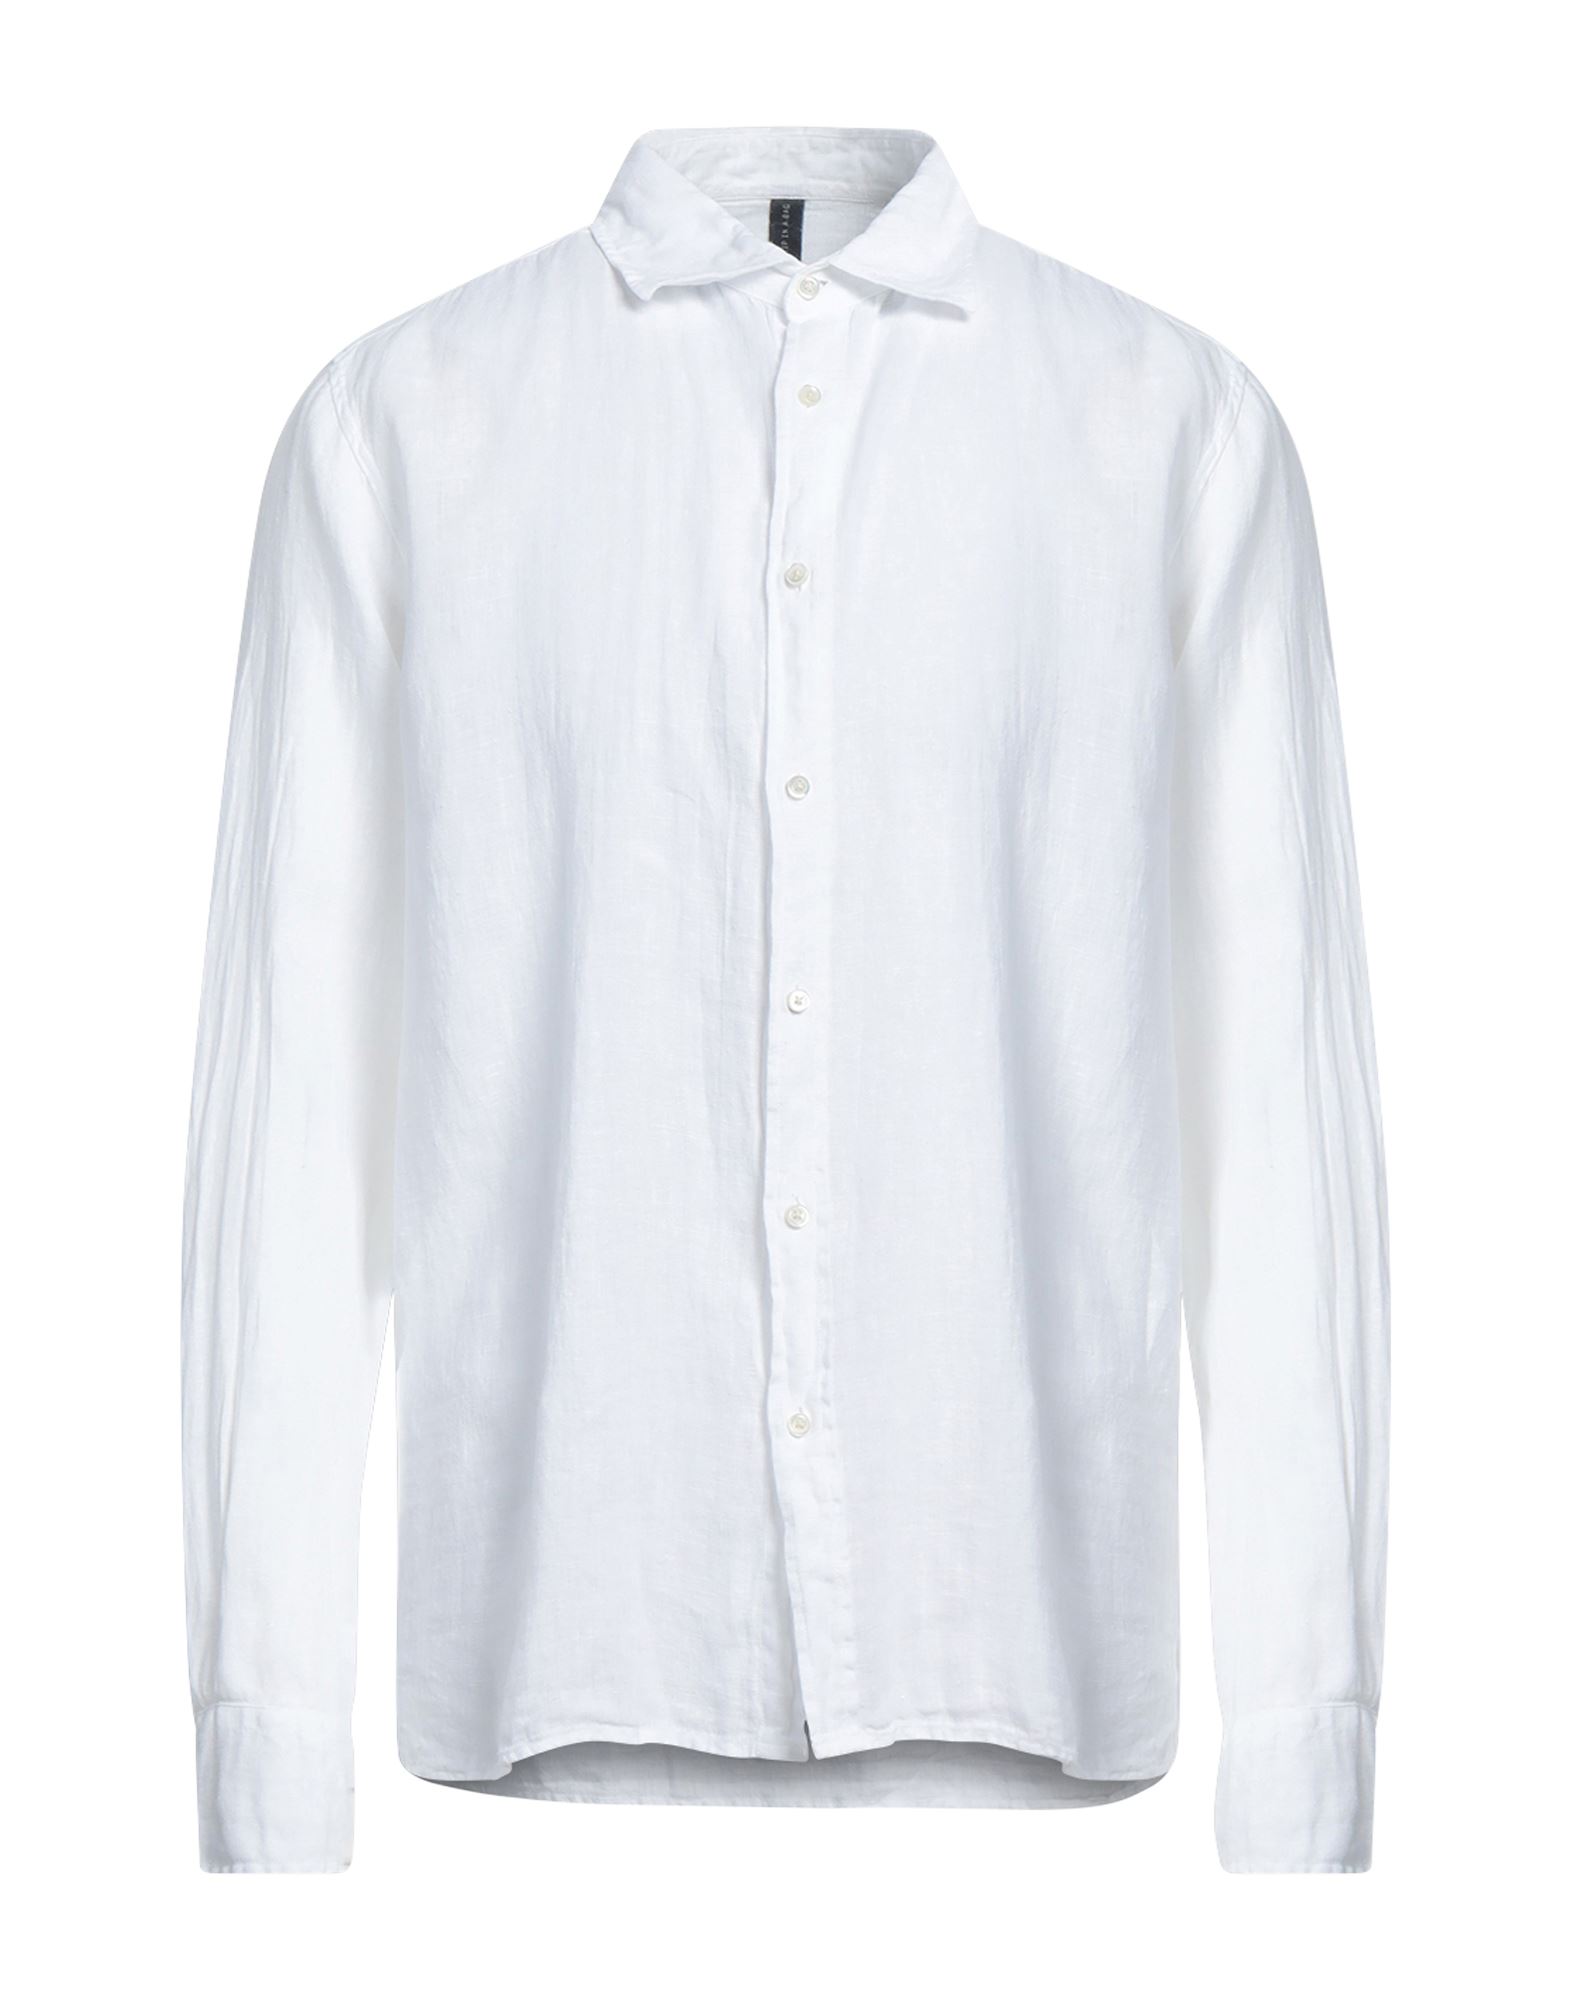 04651/a Trip In A Bag Man Shirt White Size L Linen